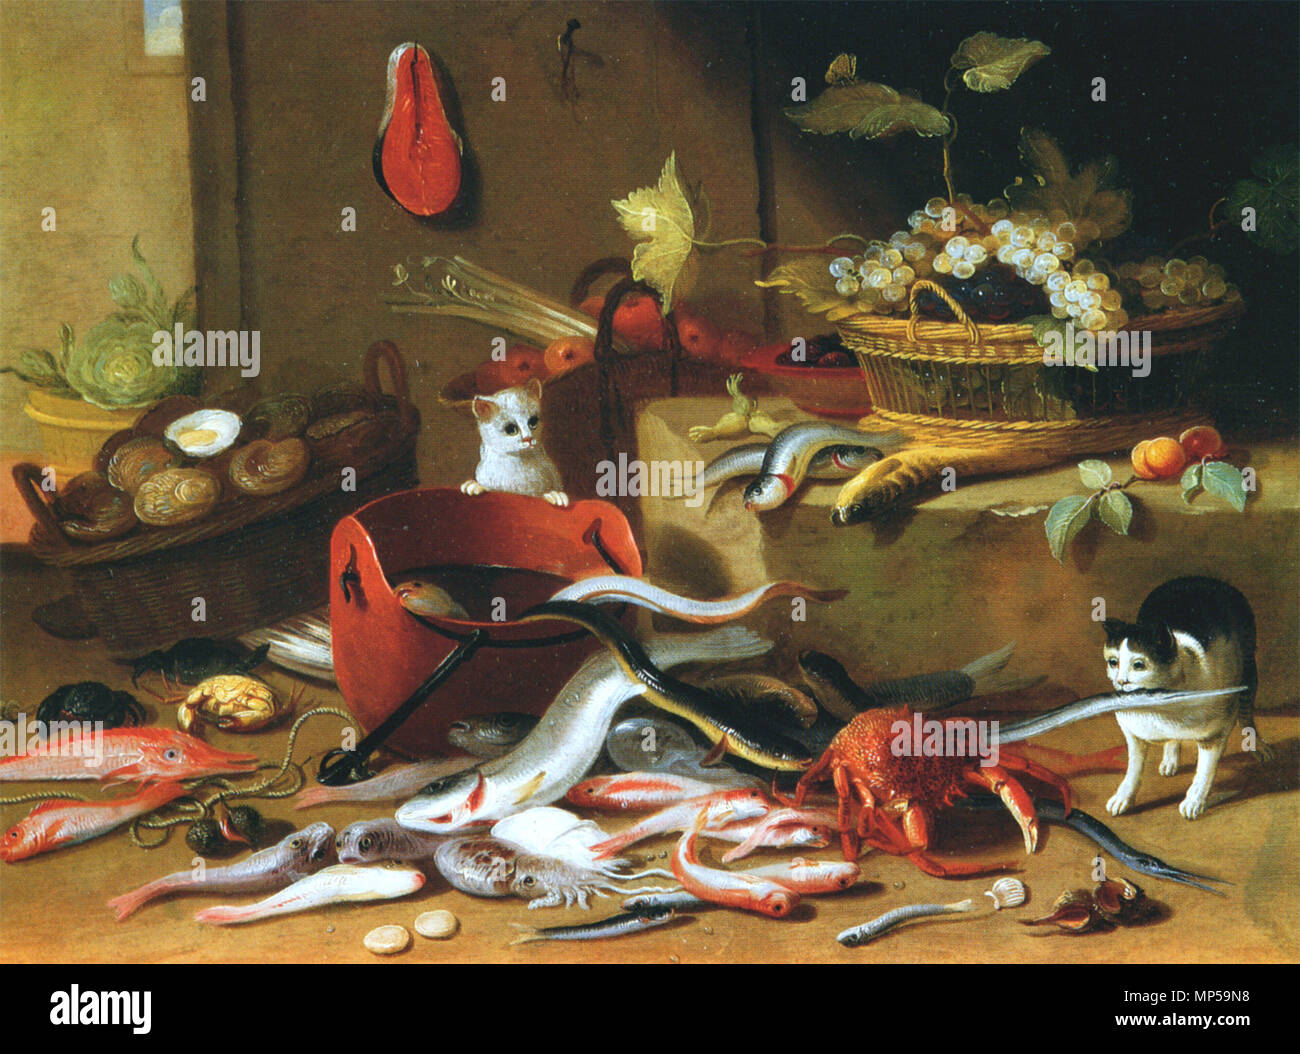 Englisch: Katzen mit Stillleben von Meerestieren, Obst und Gemüse Français: Deux Chats jouant avec Le Poisson 1665-1679. 1148 Studio von Jan Van Kessel ICH - Katzen mit Still Life Stockfoto